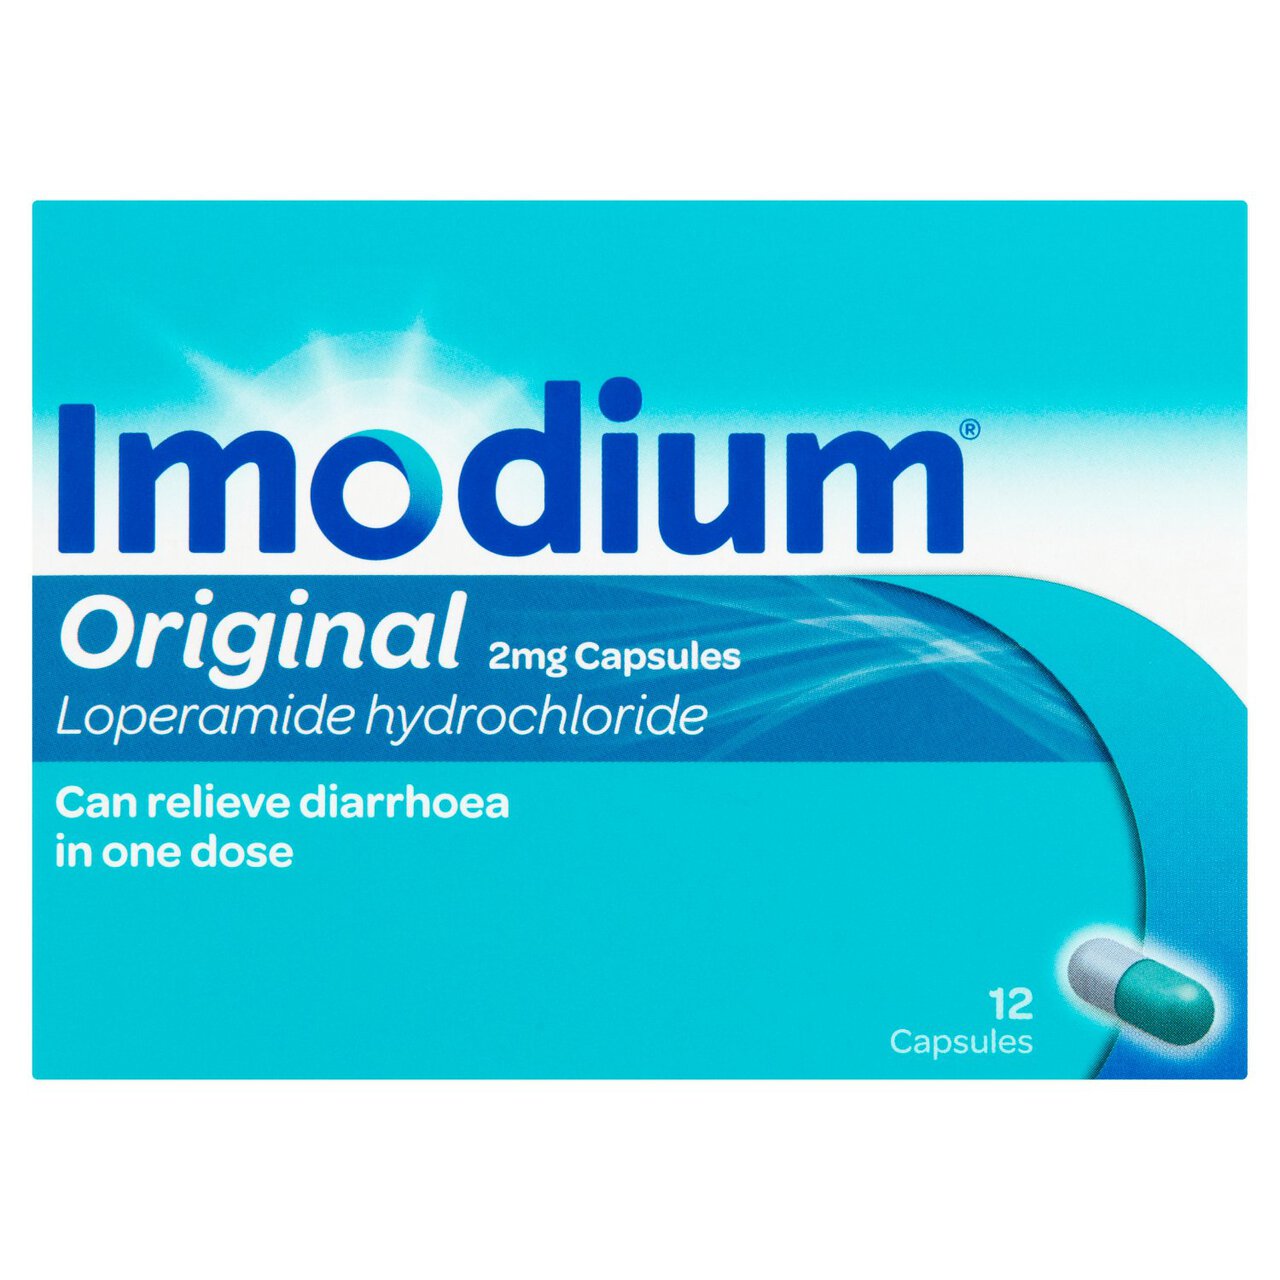 Imodium Original Capsules for Diarrhoea Relief 12 per pack